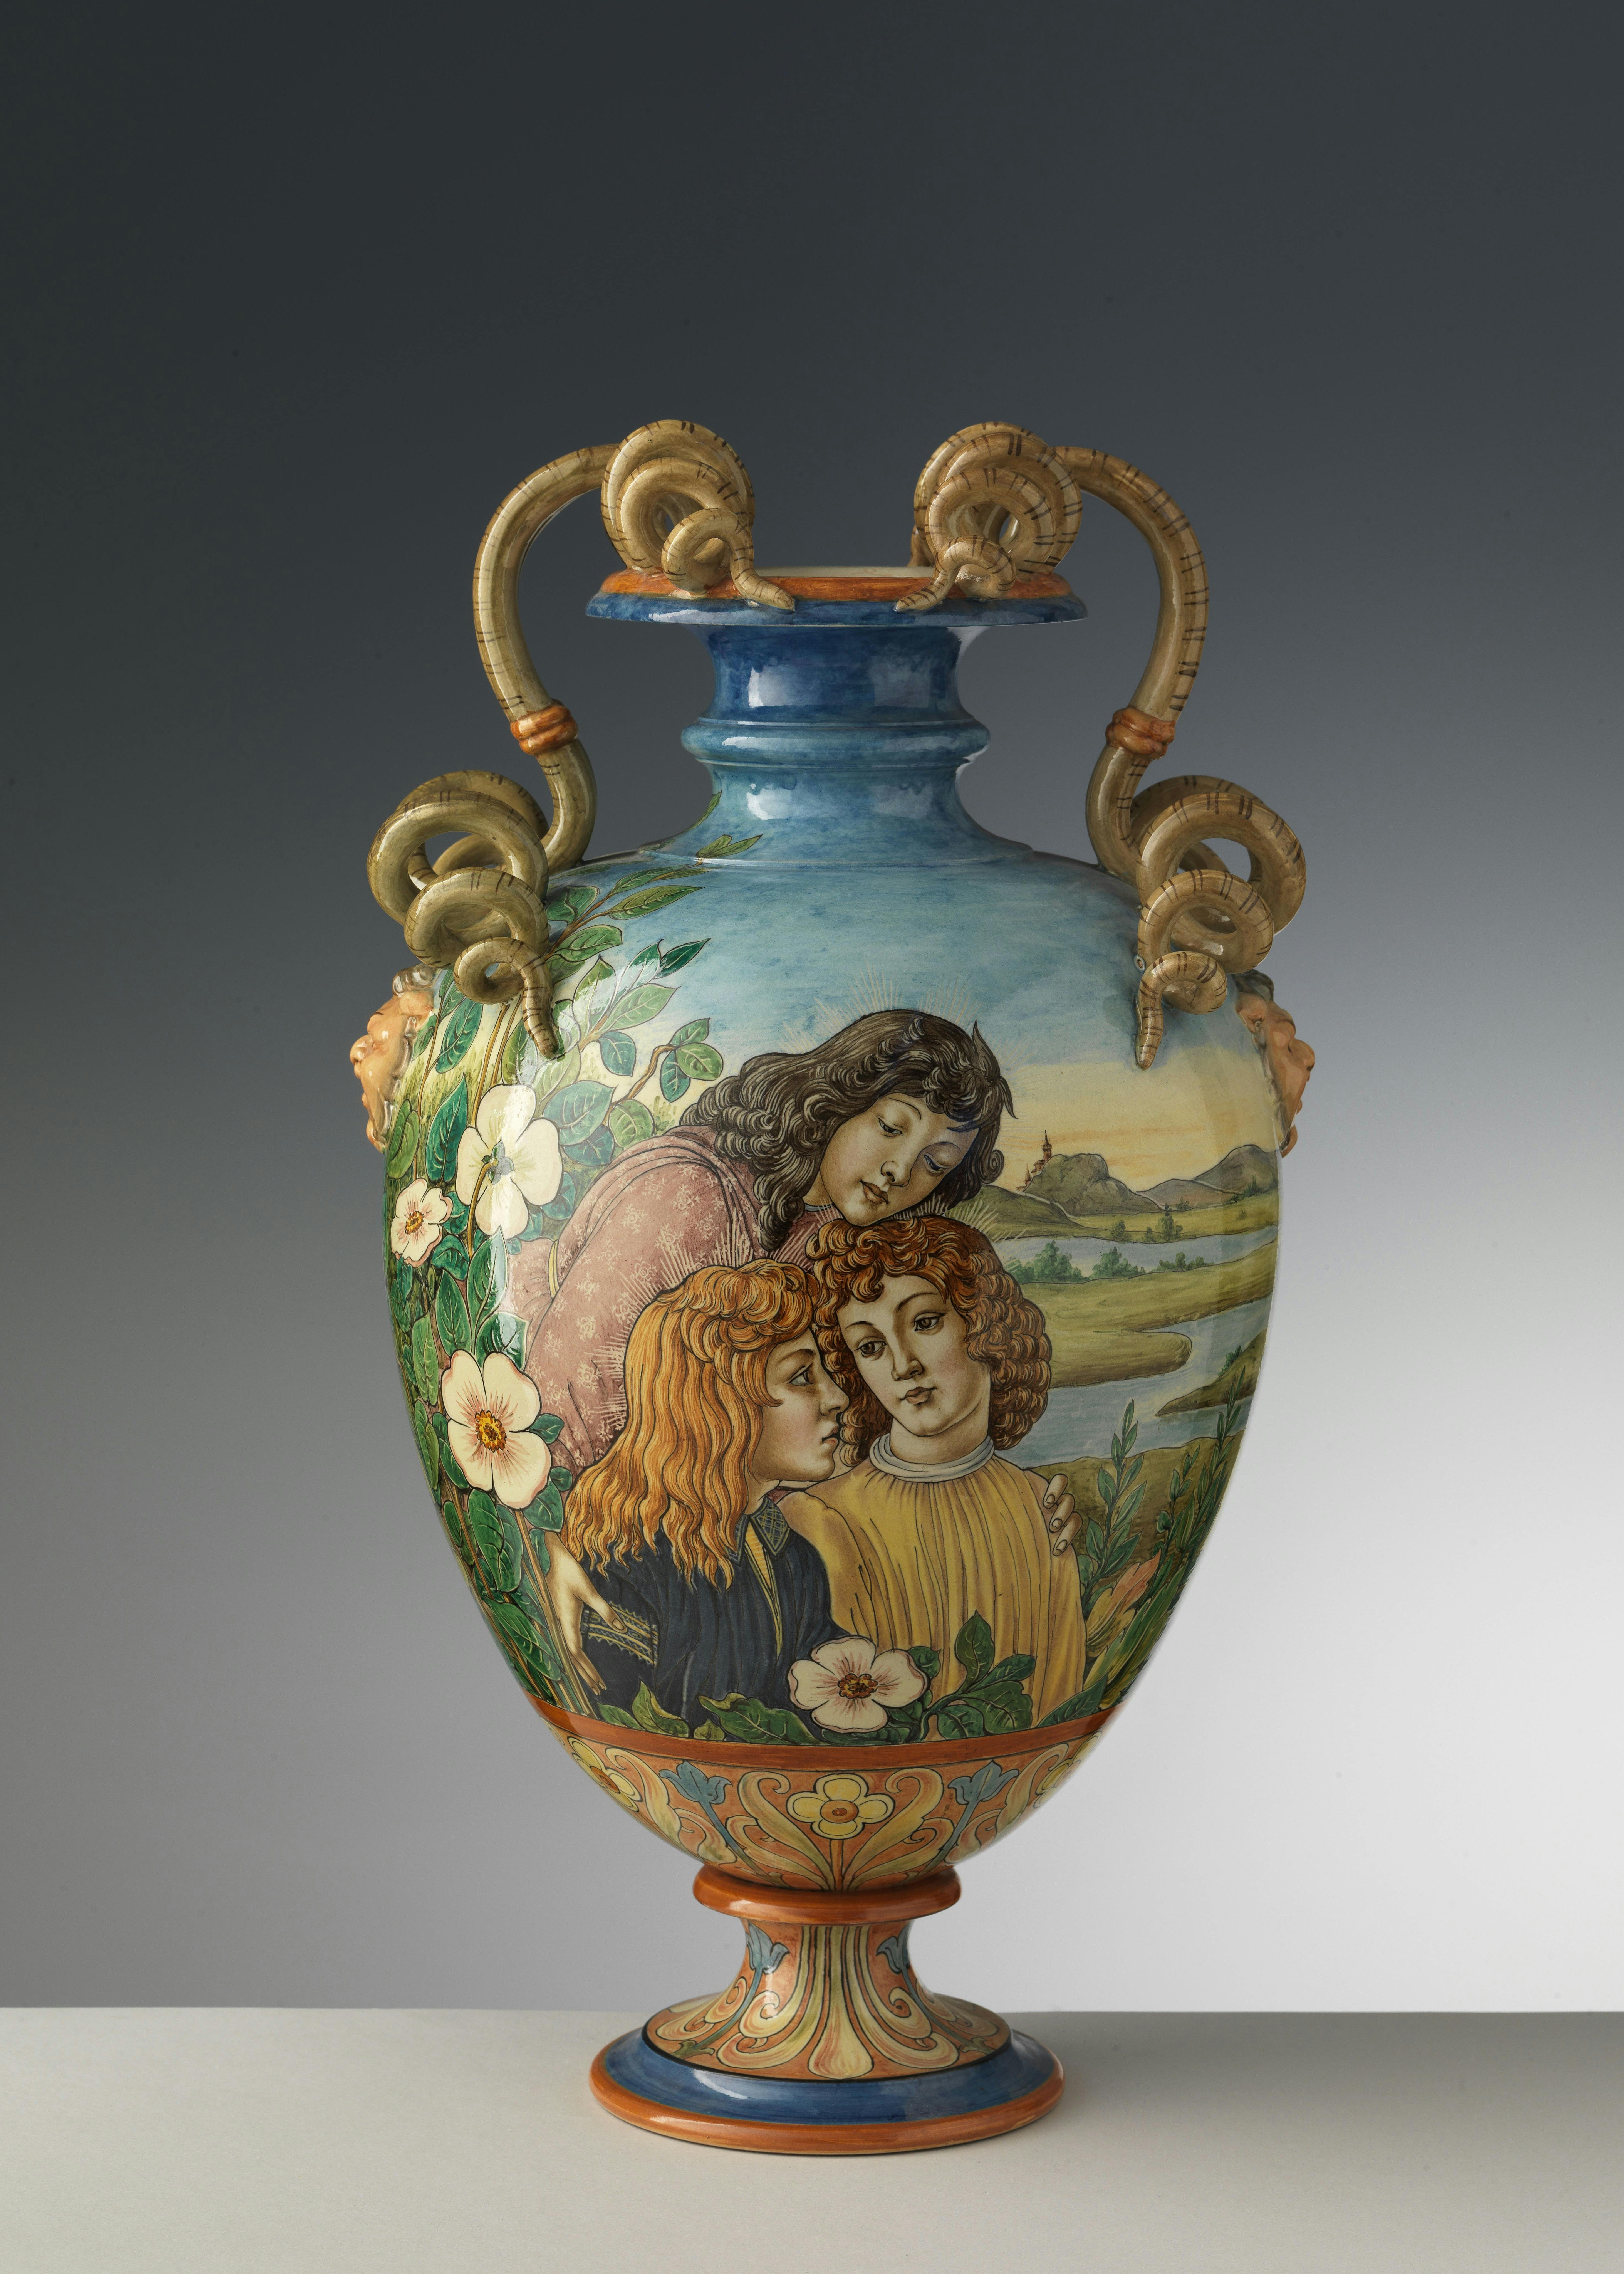 Sul vaso sono raffigurati tre fanciulli molto vicini tra loro, fiori bianchi e un paesaggio